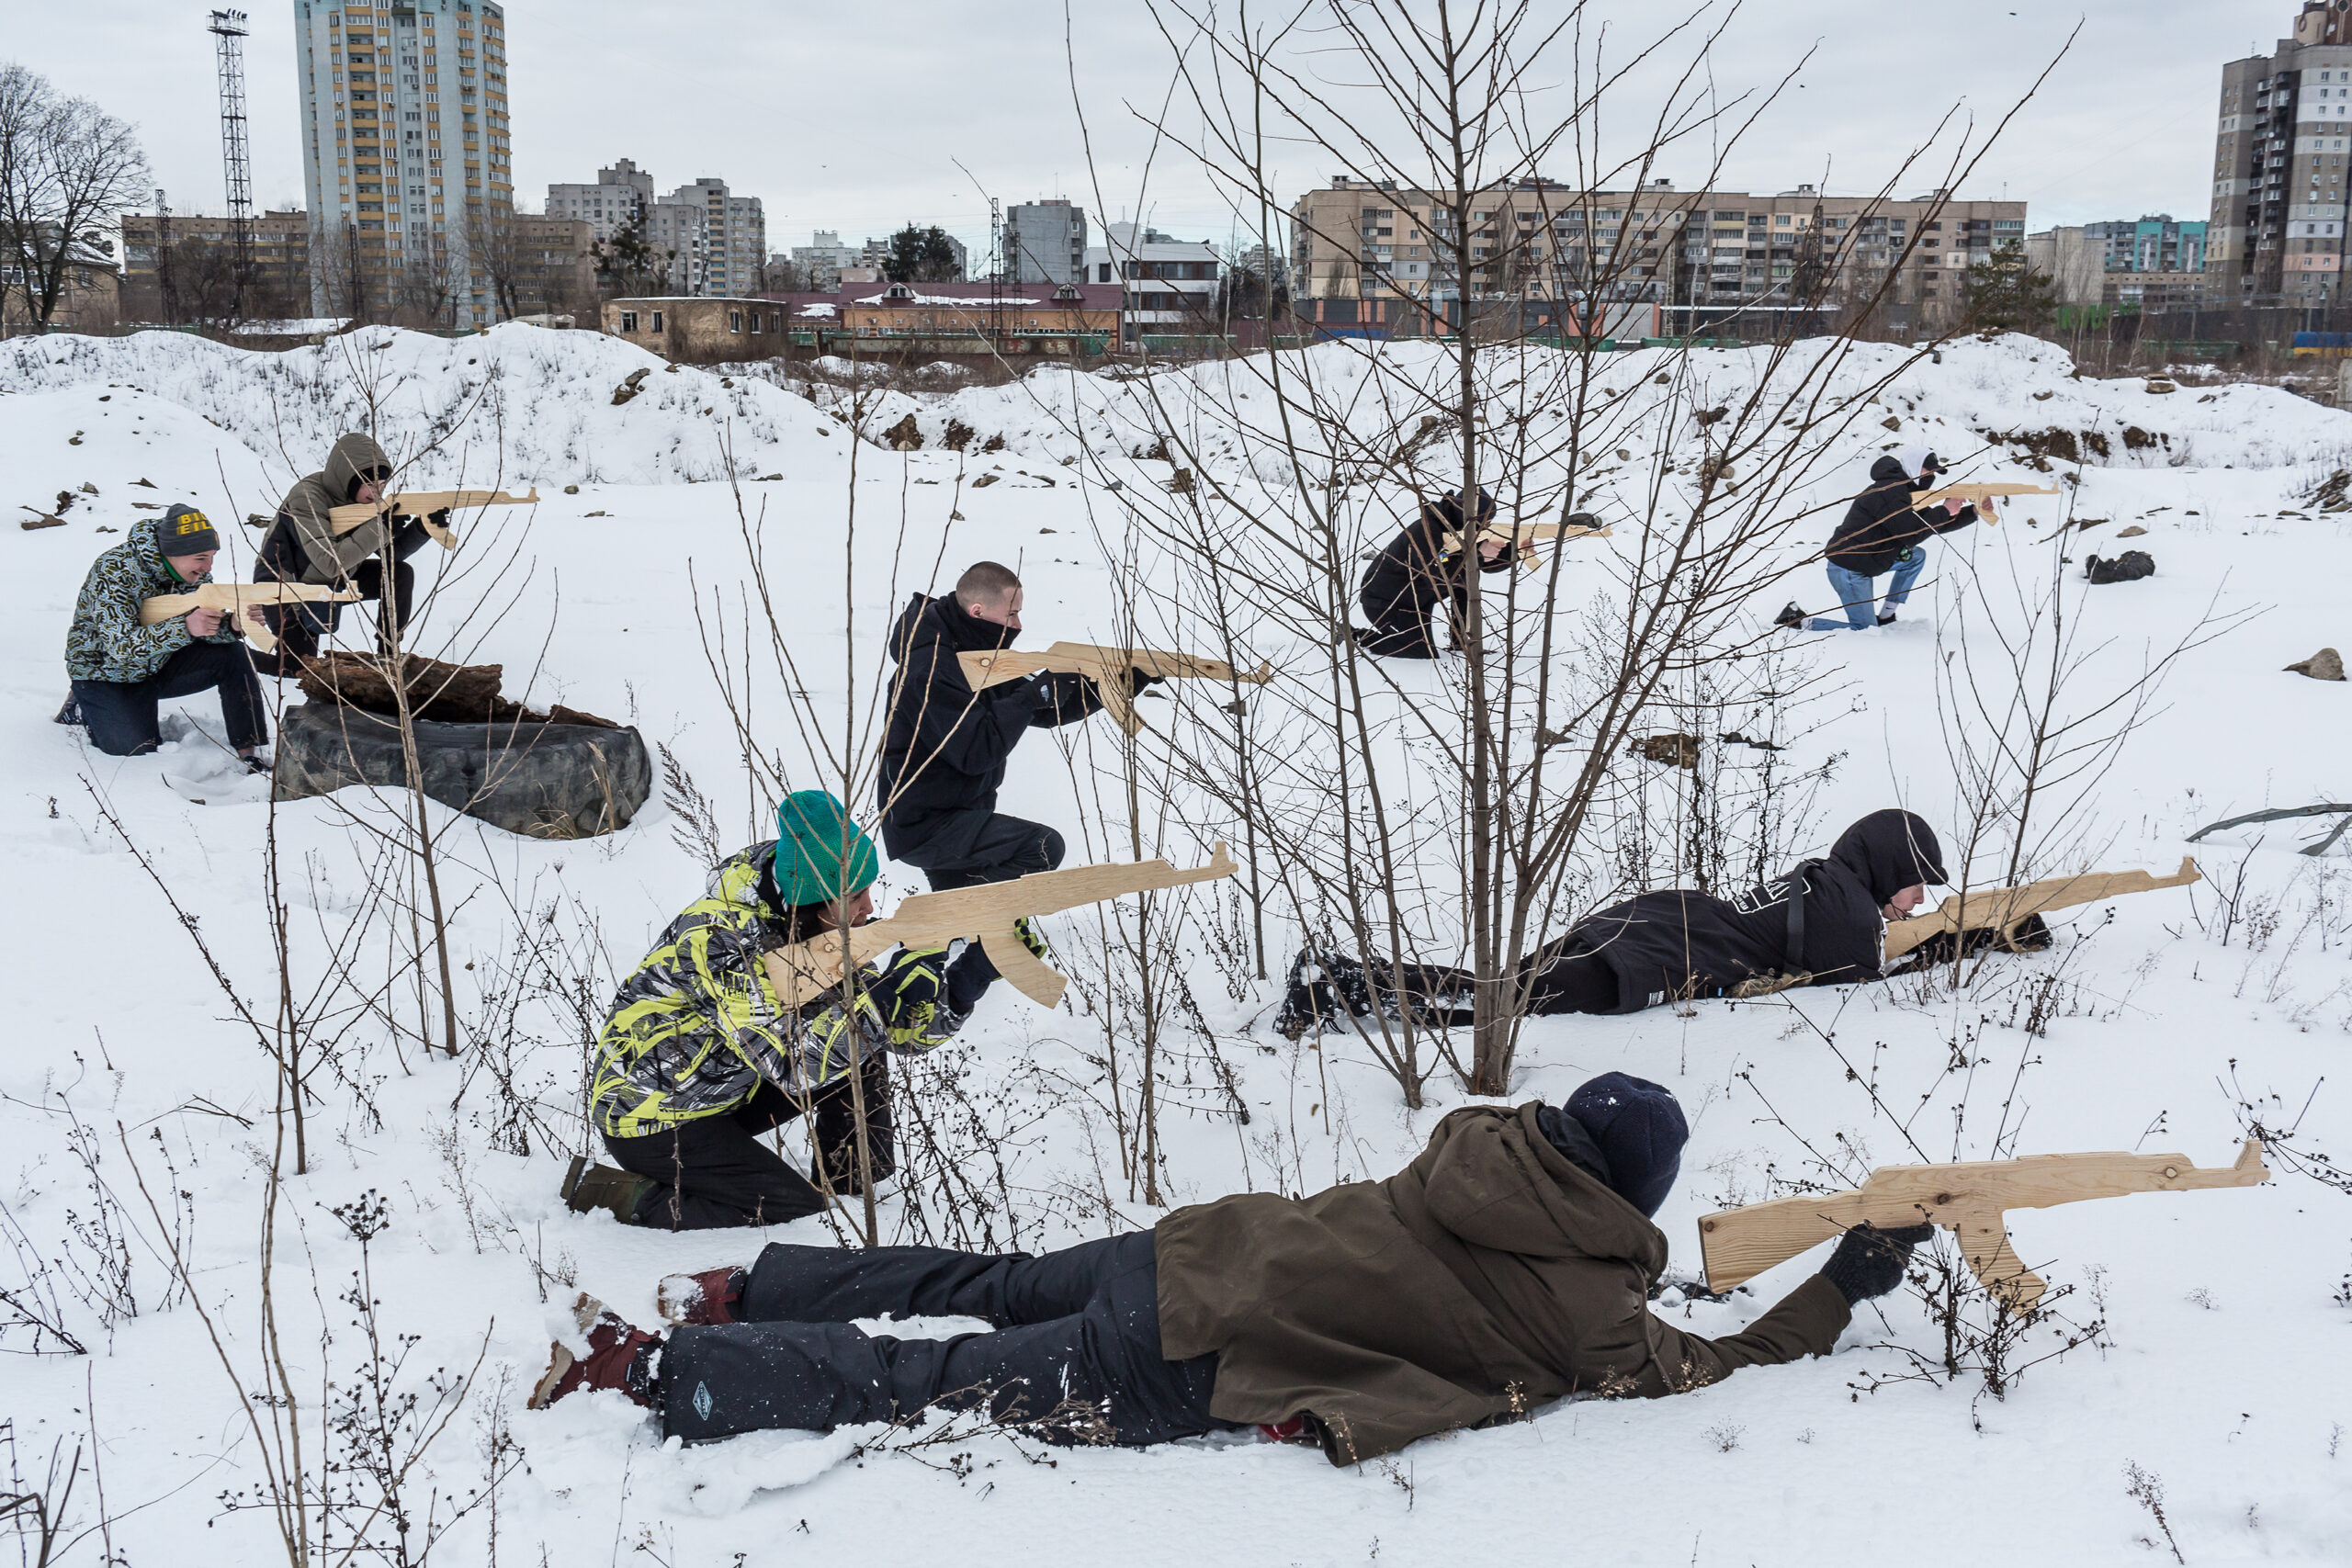 Menschen liegen im Schnee und zielen mit Holz-Waffen auf ein für uns nicht sichtbares Ziel